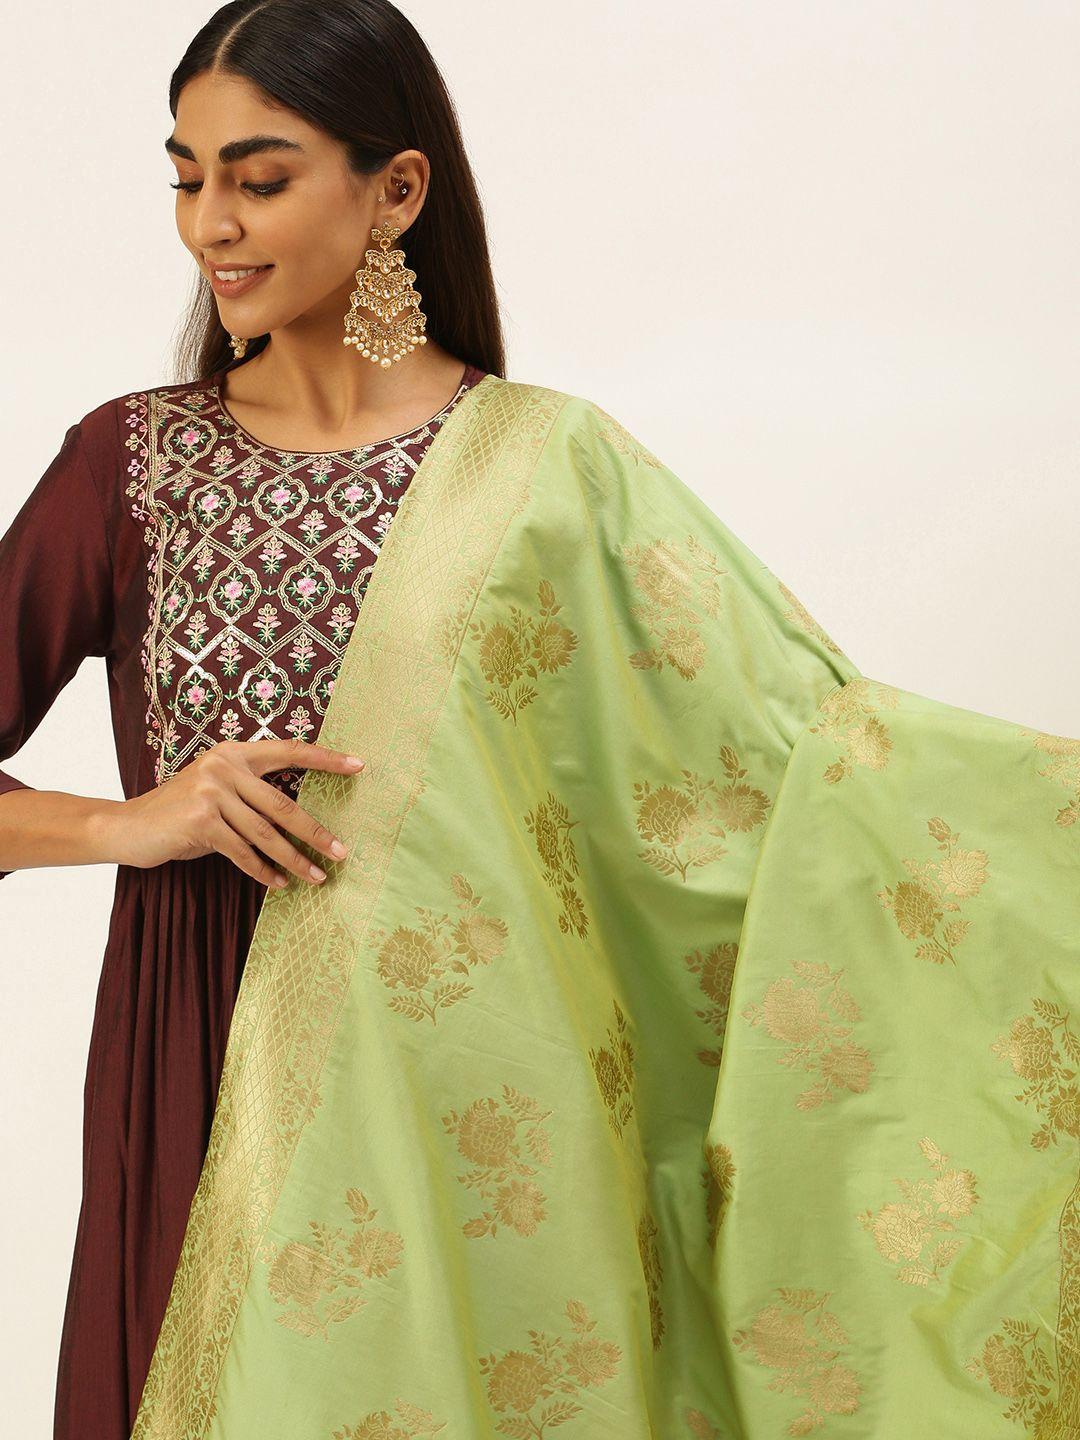 panchhi-green-ethnic-motifs-woven-design-dupatta-with-zari